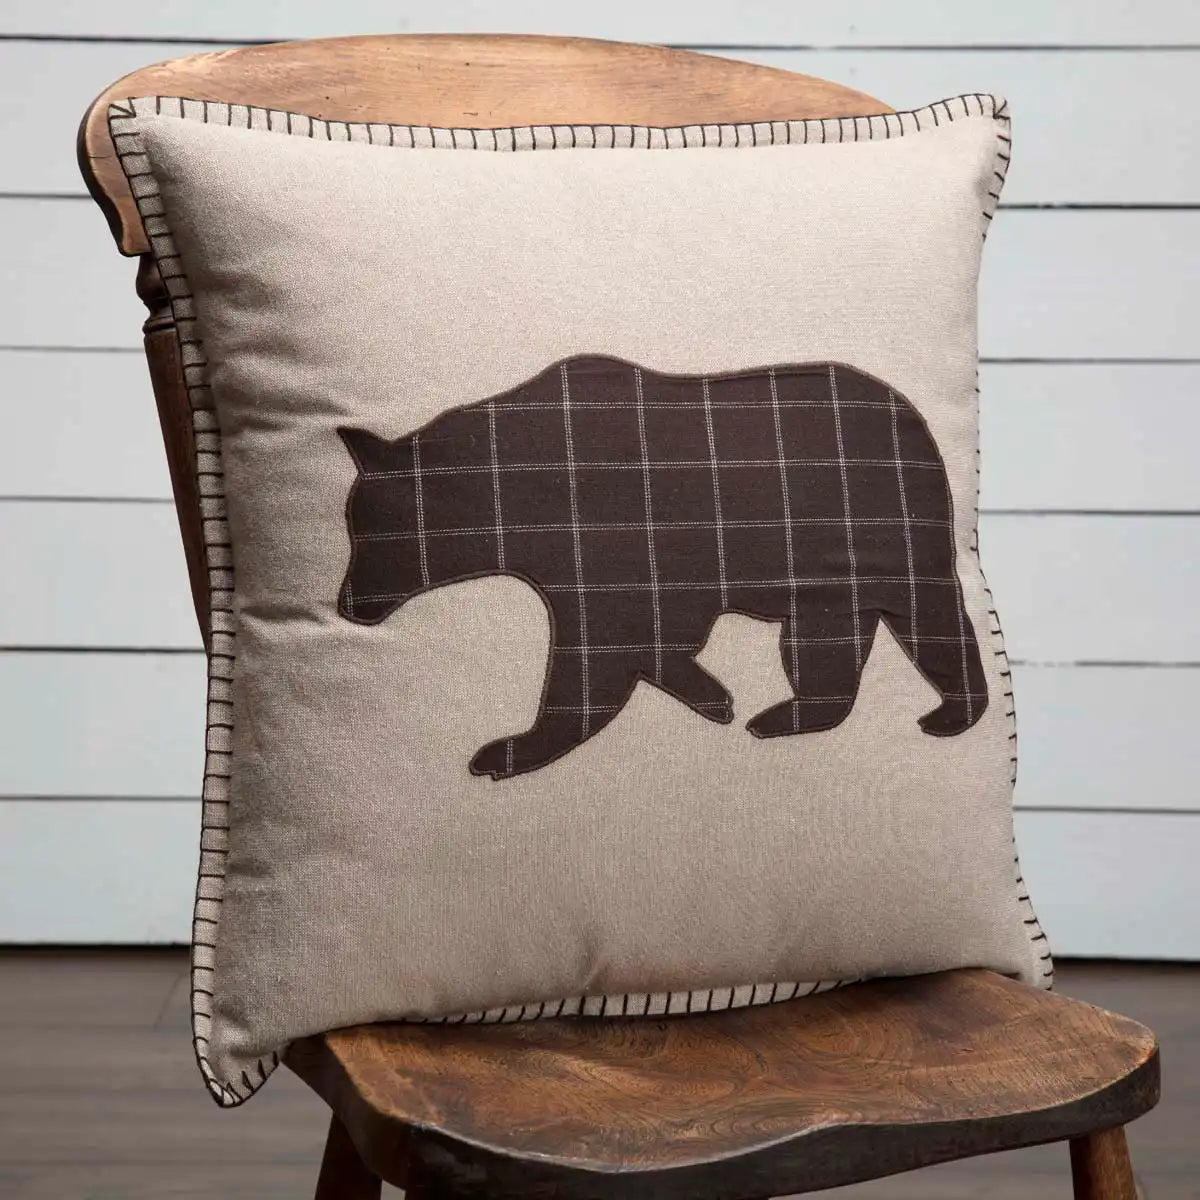 bear applique cushion on chair